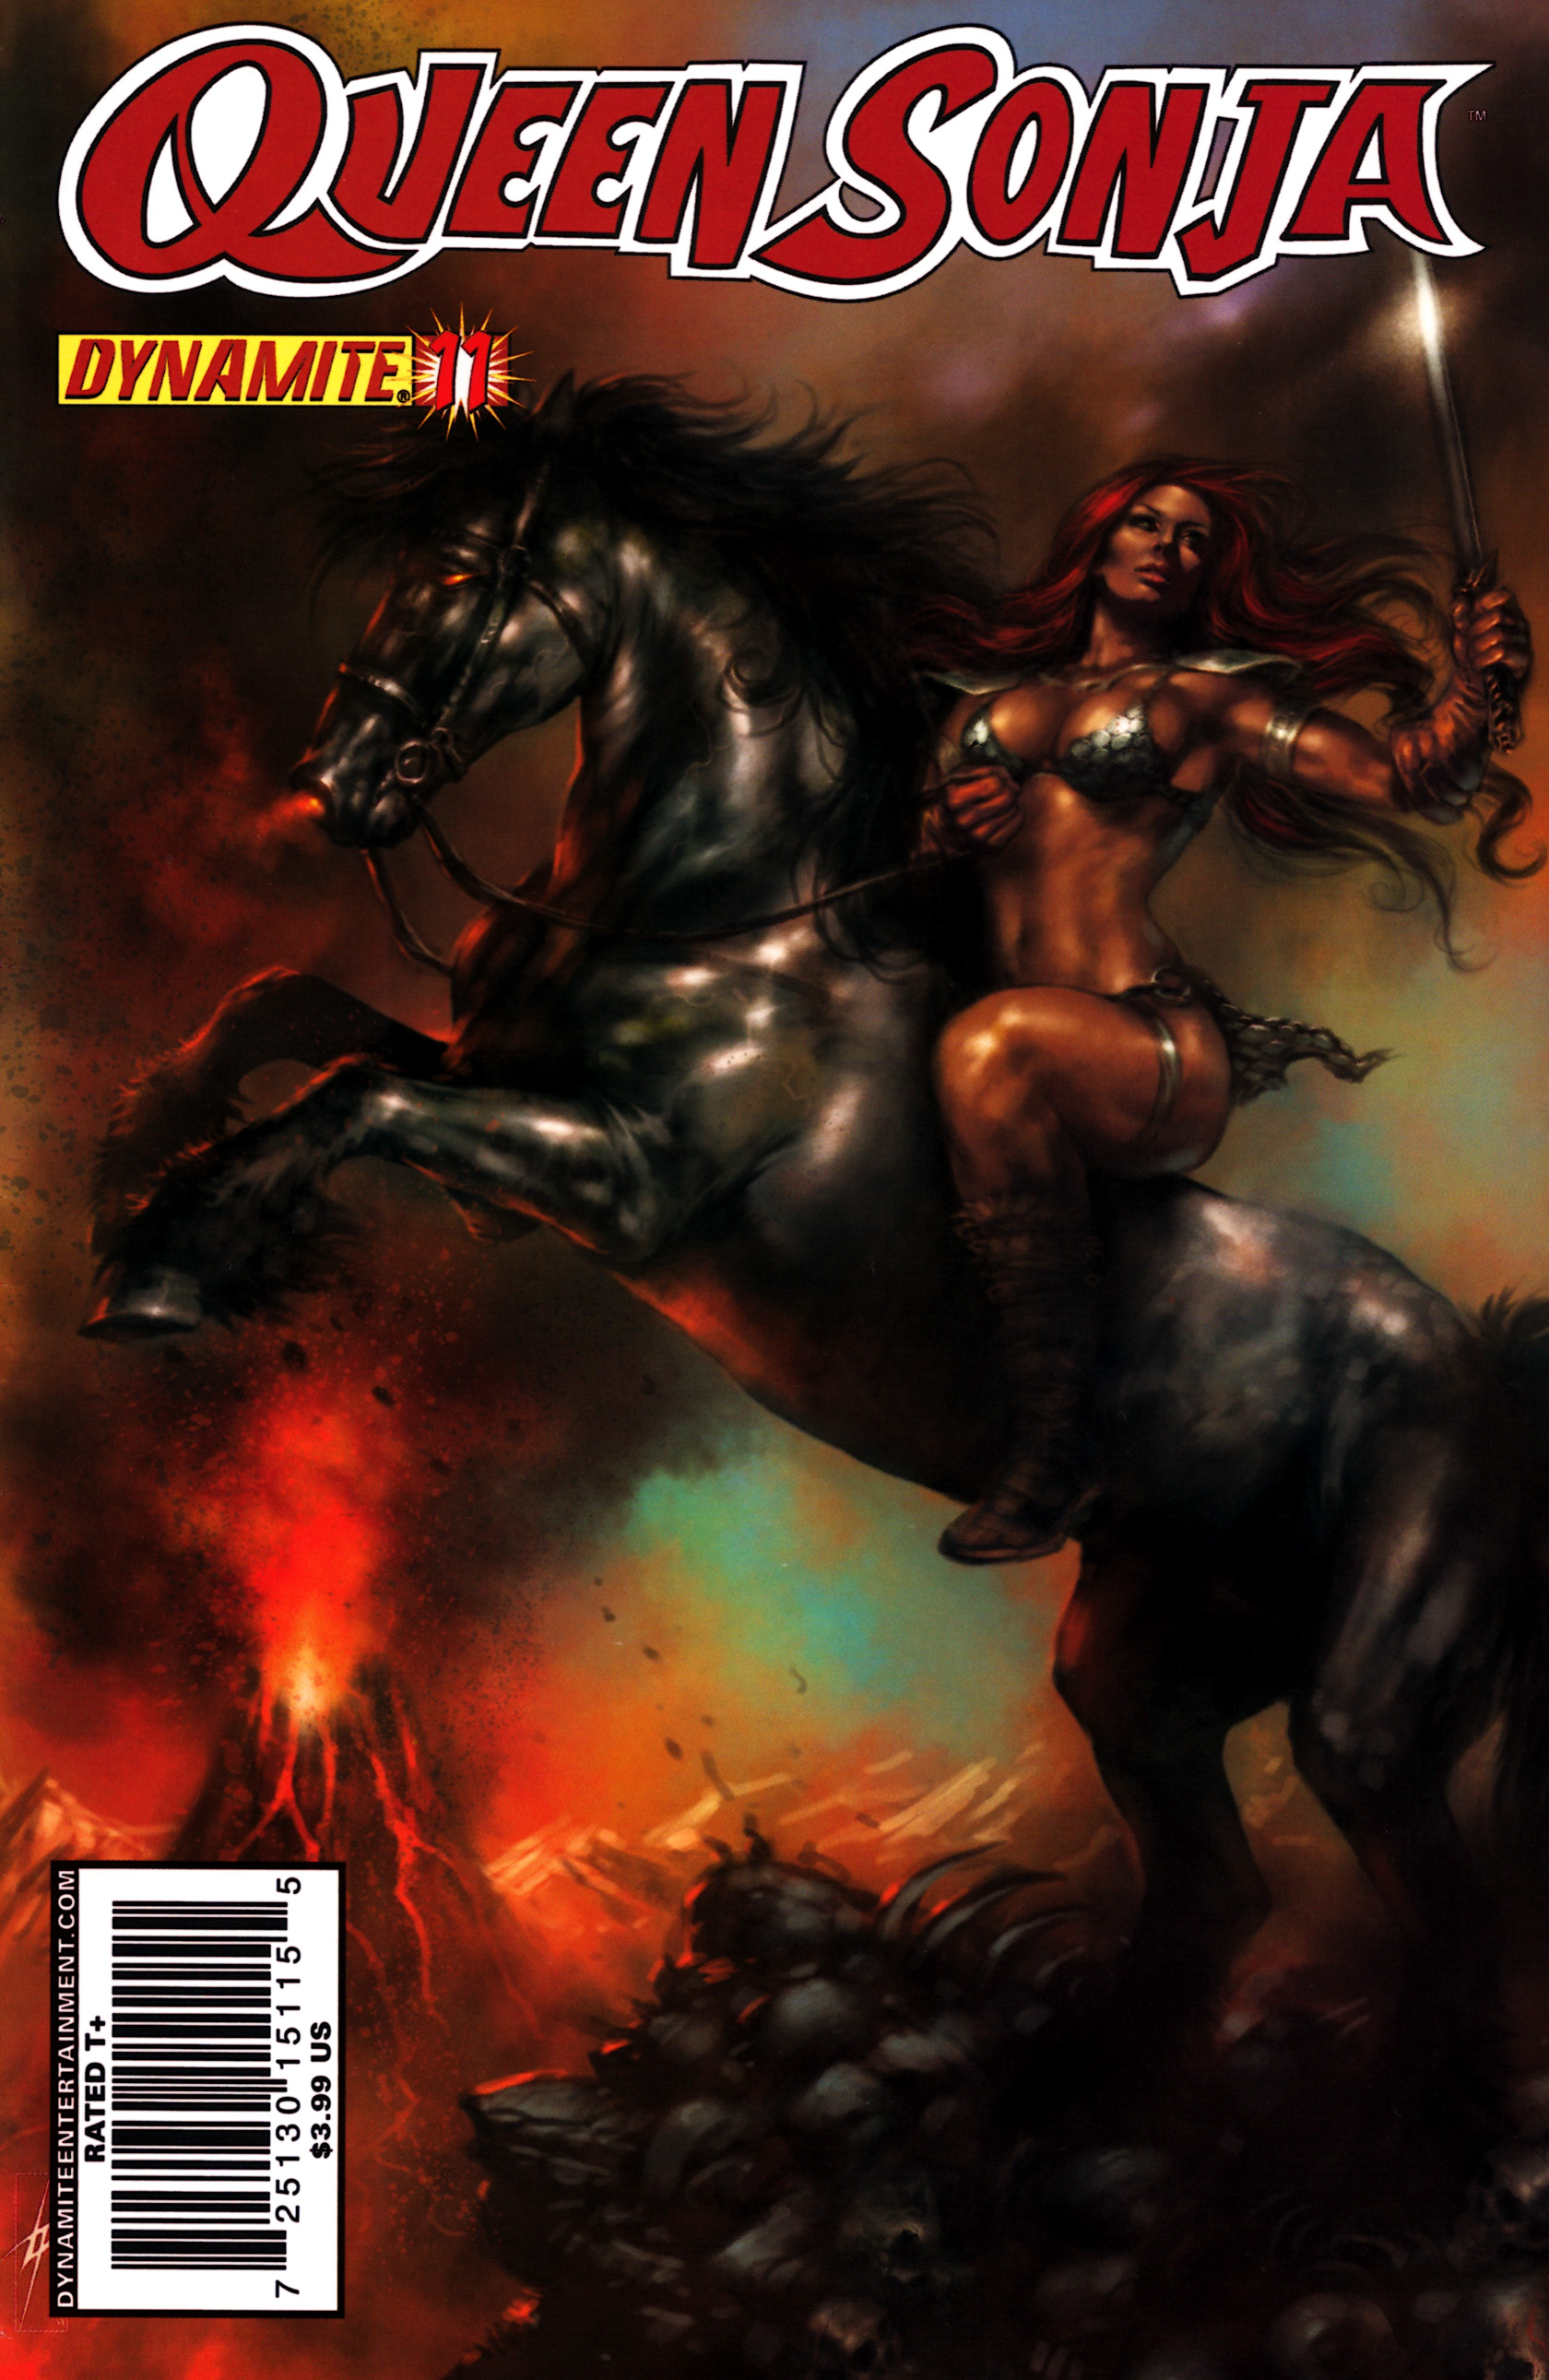 Read online Queen Sonja comic -  Issue #11 - 1